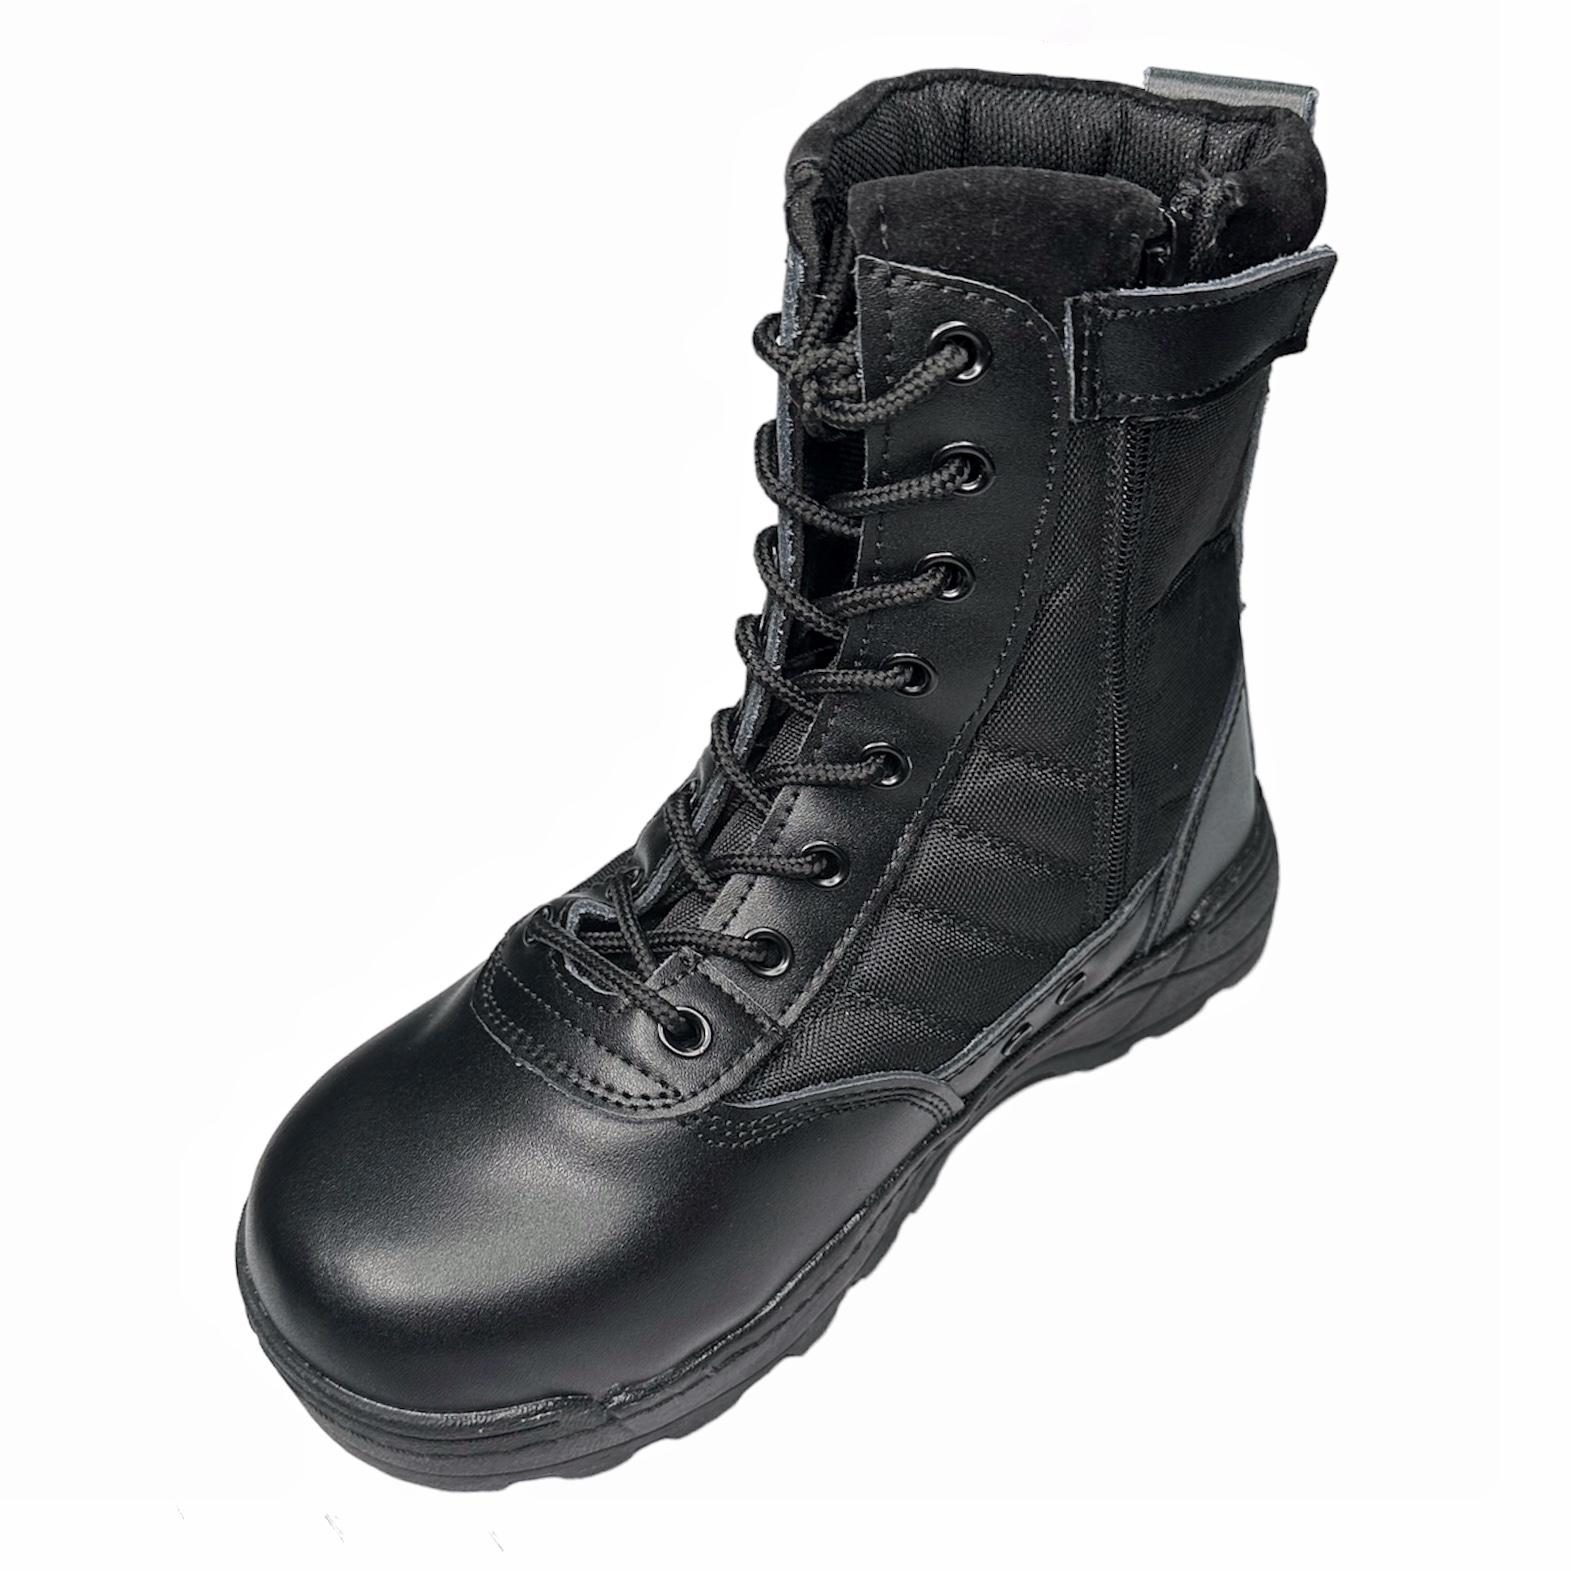 High Desert - GSG9 Tactical Steel Toe Boots 8" Side Zip